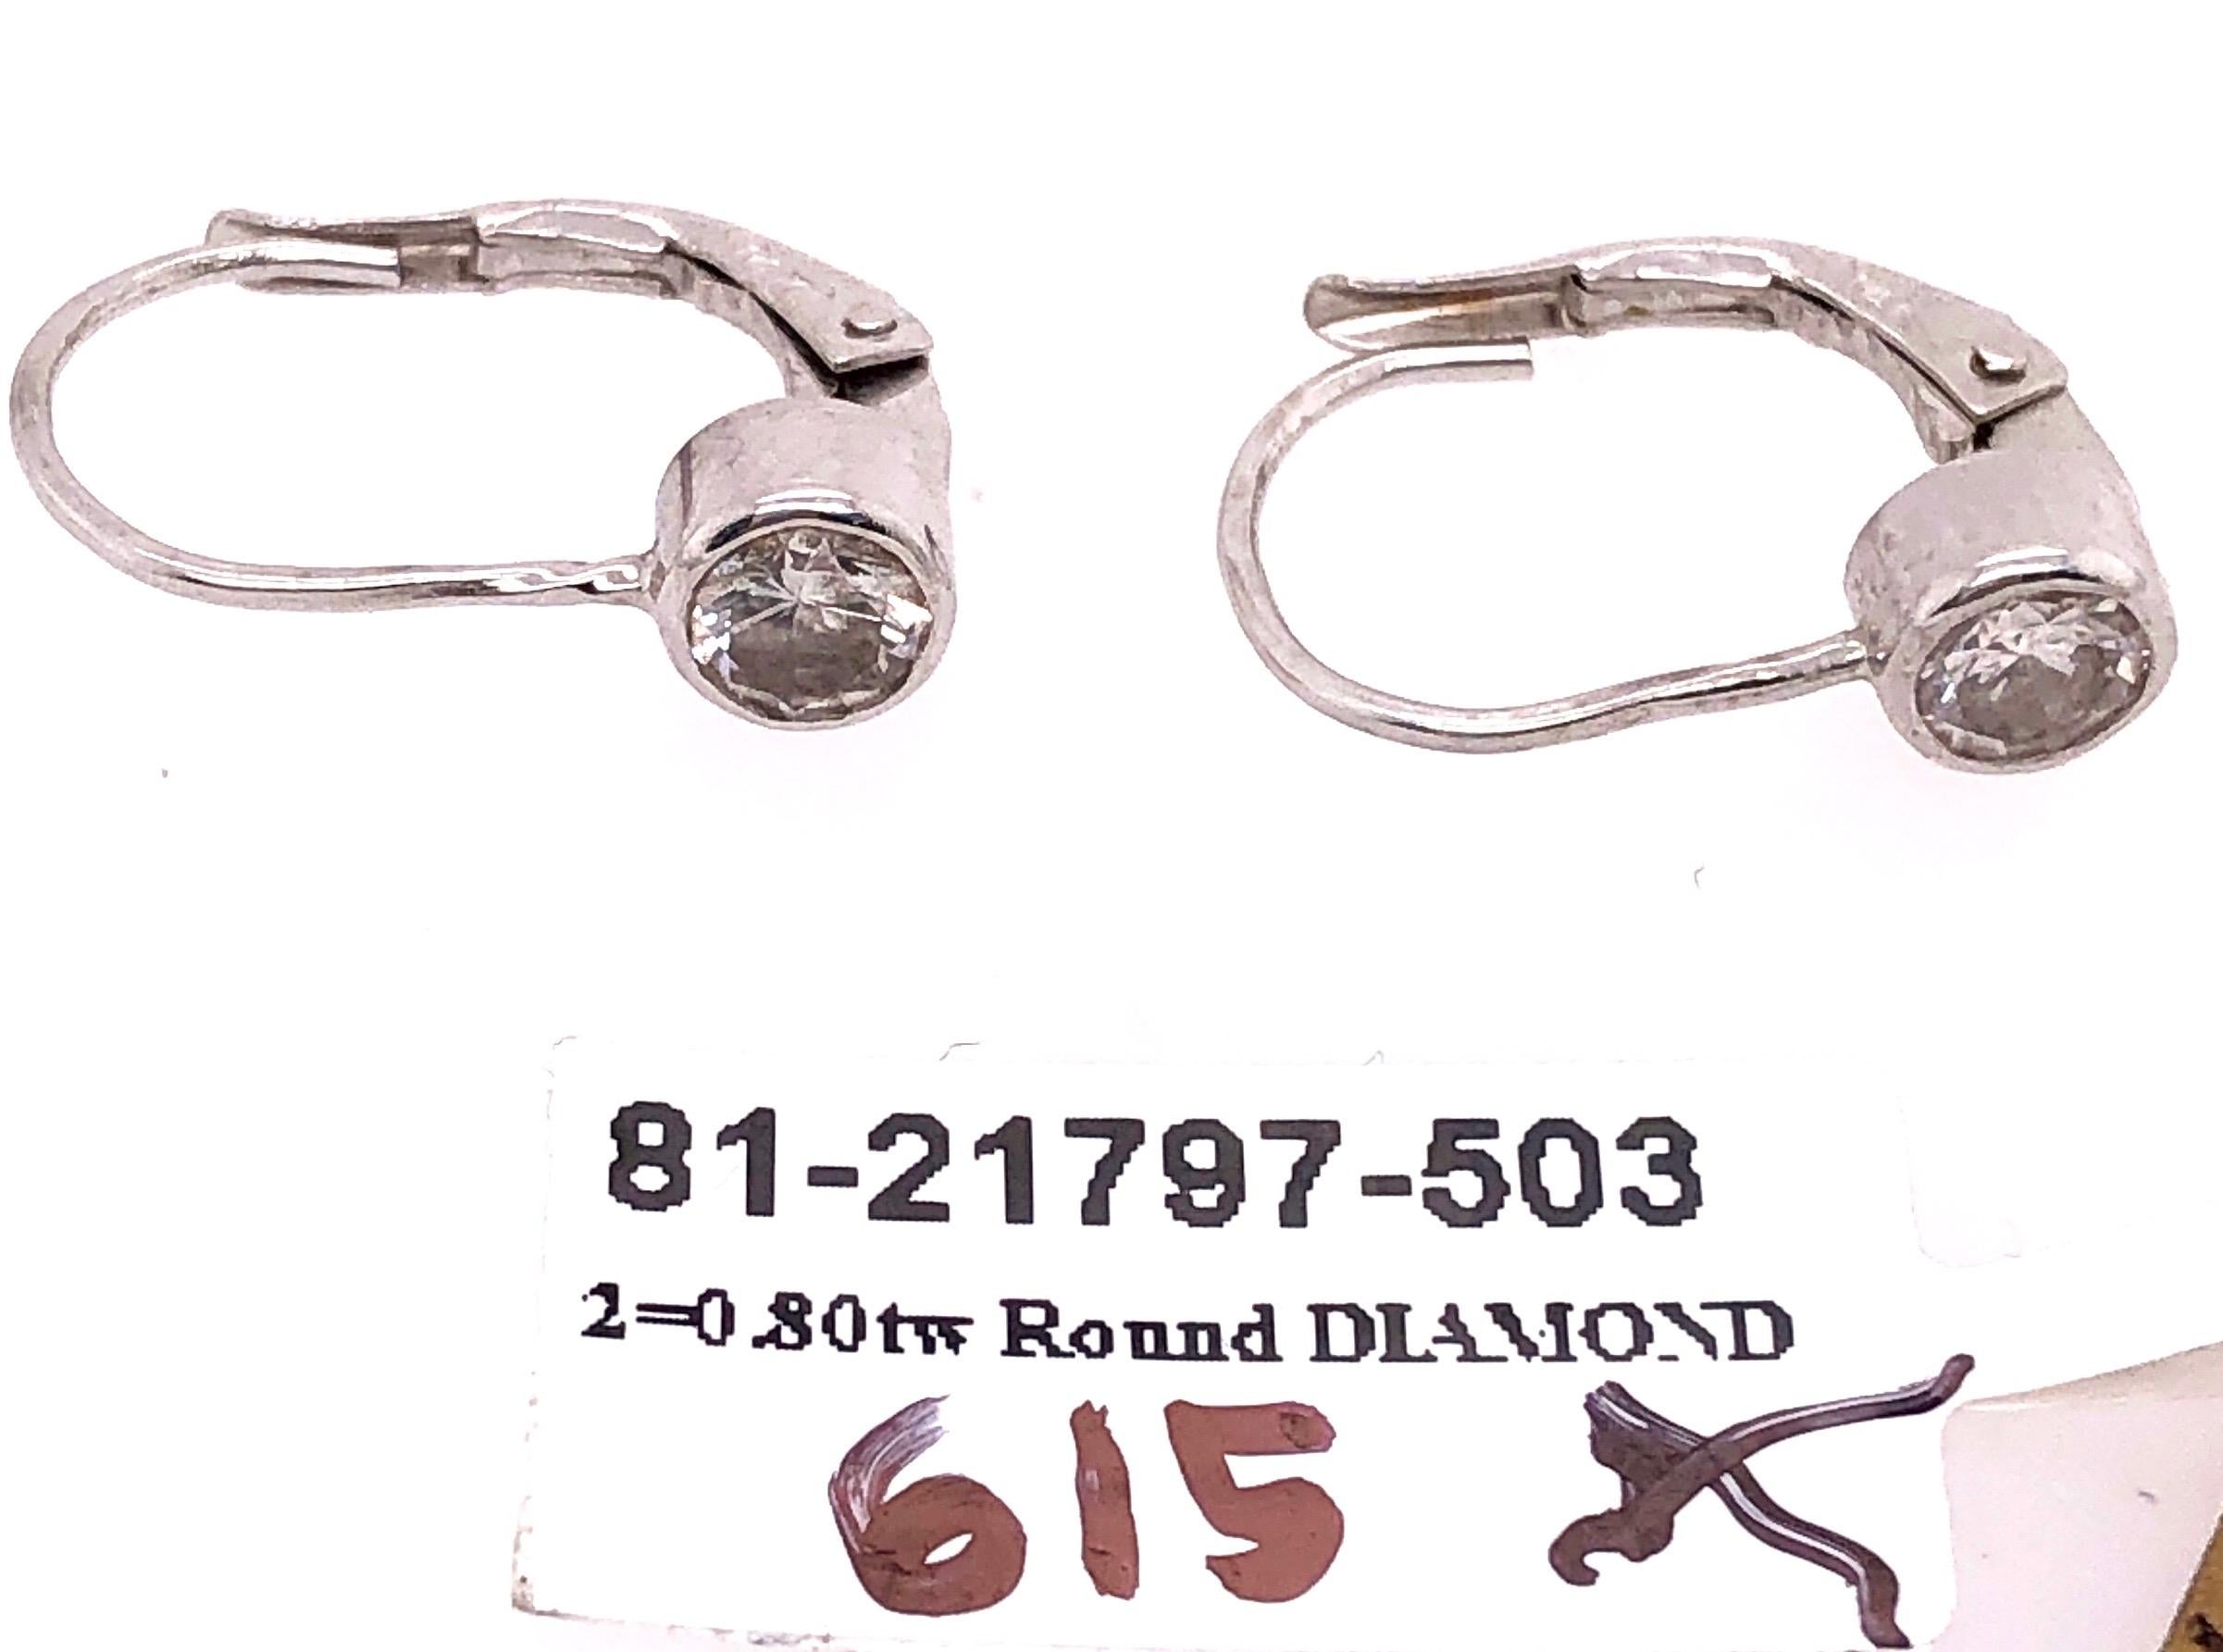 14 Karat White Gold Lever Back Diamond Earrings 0.80 TDW For Sale 2